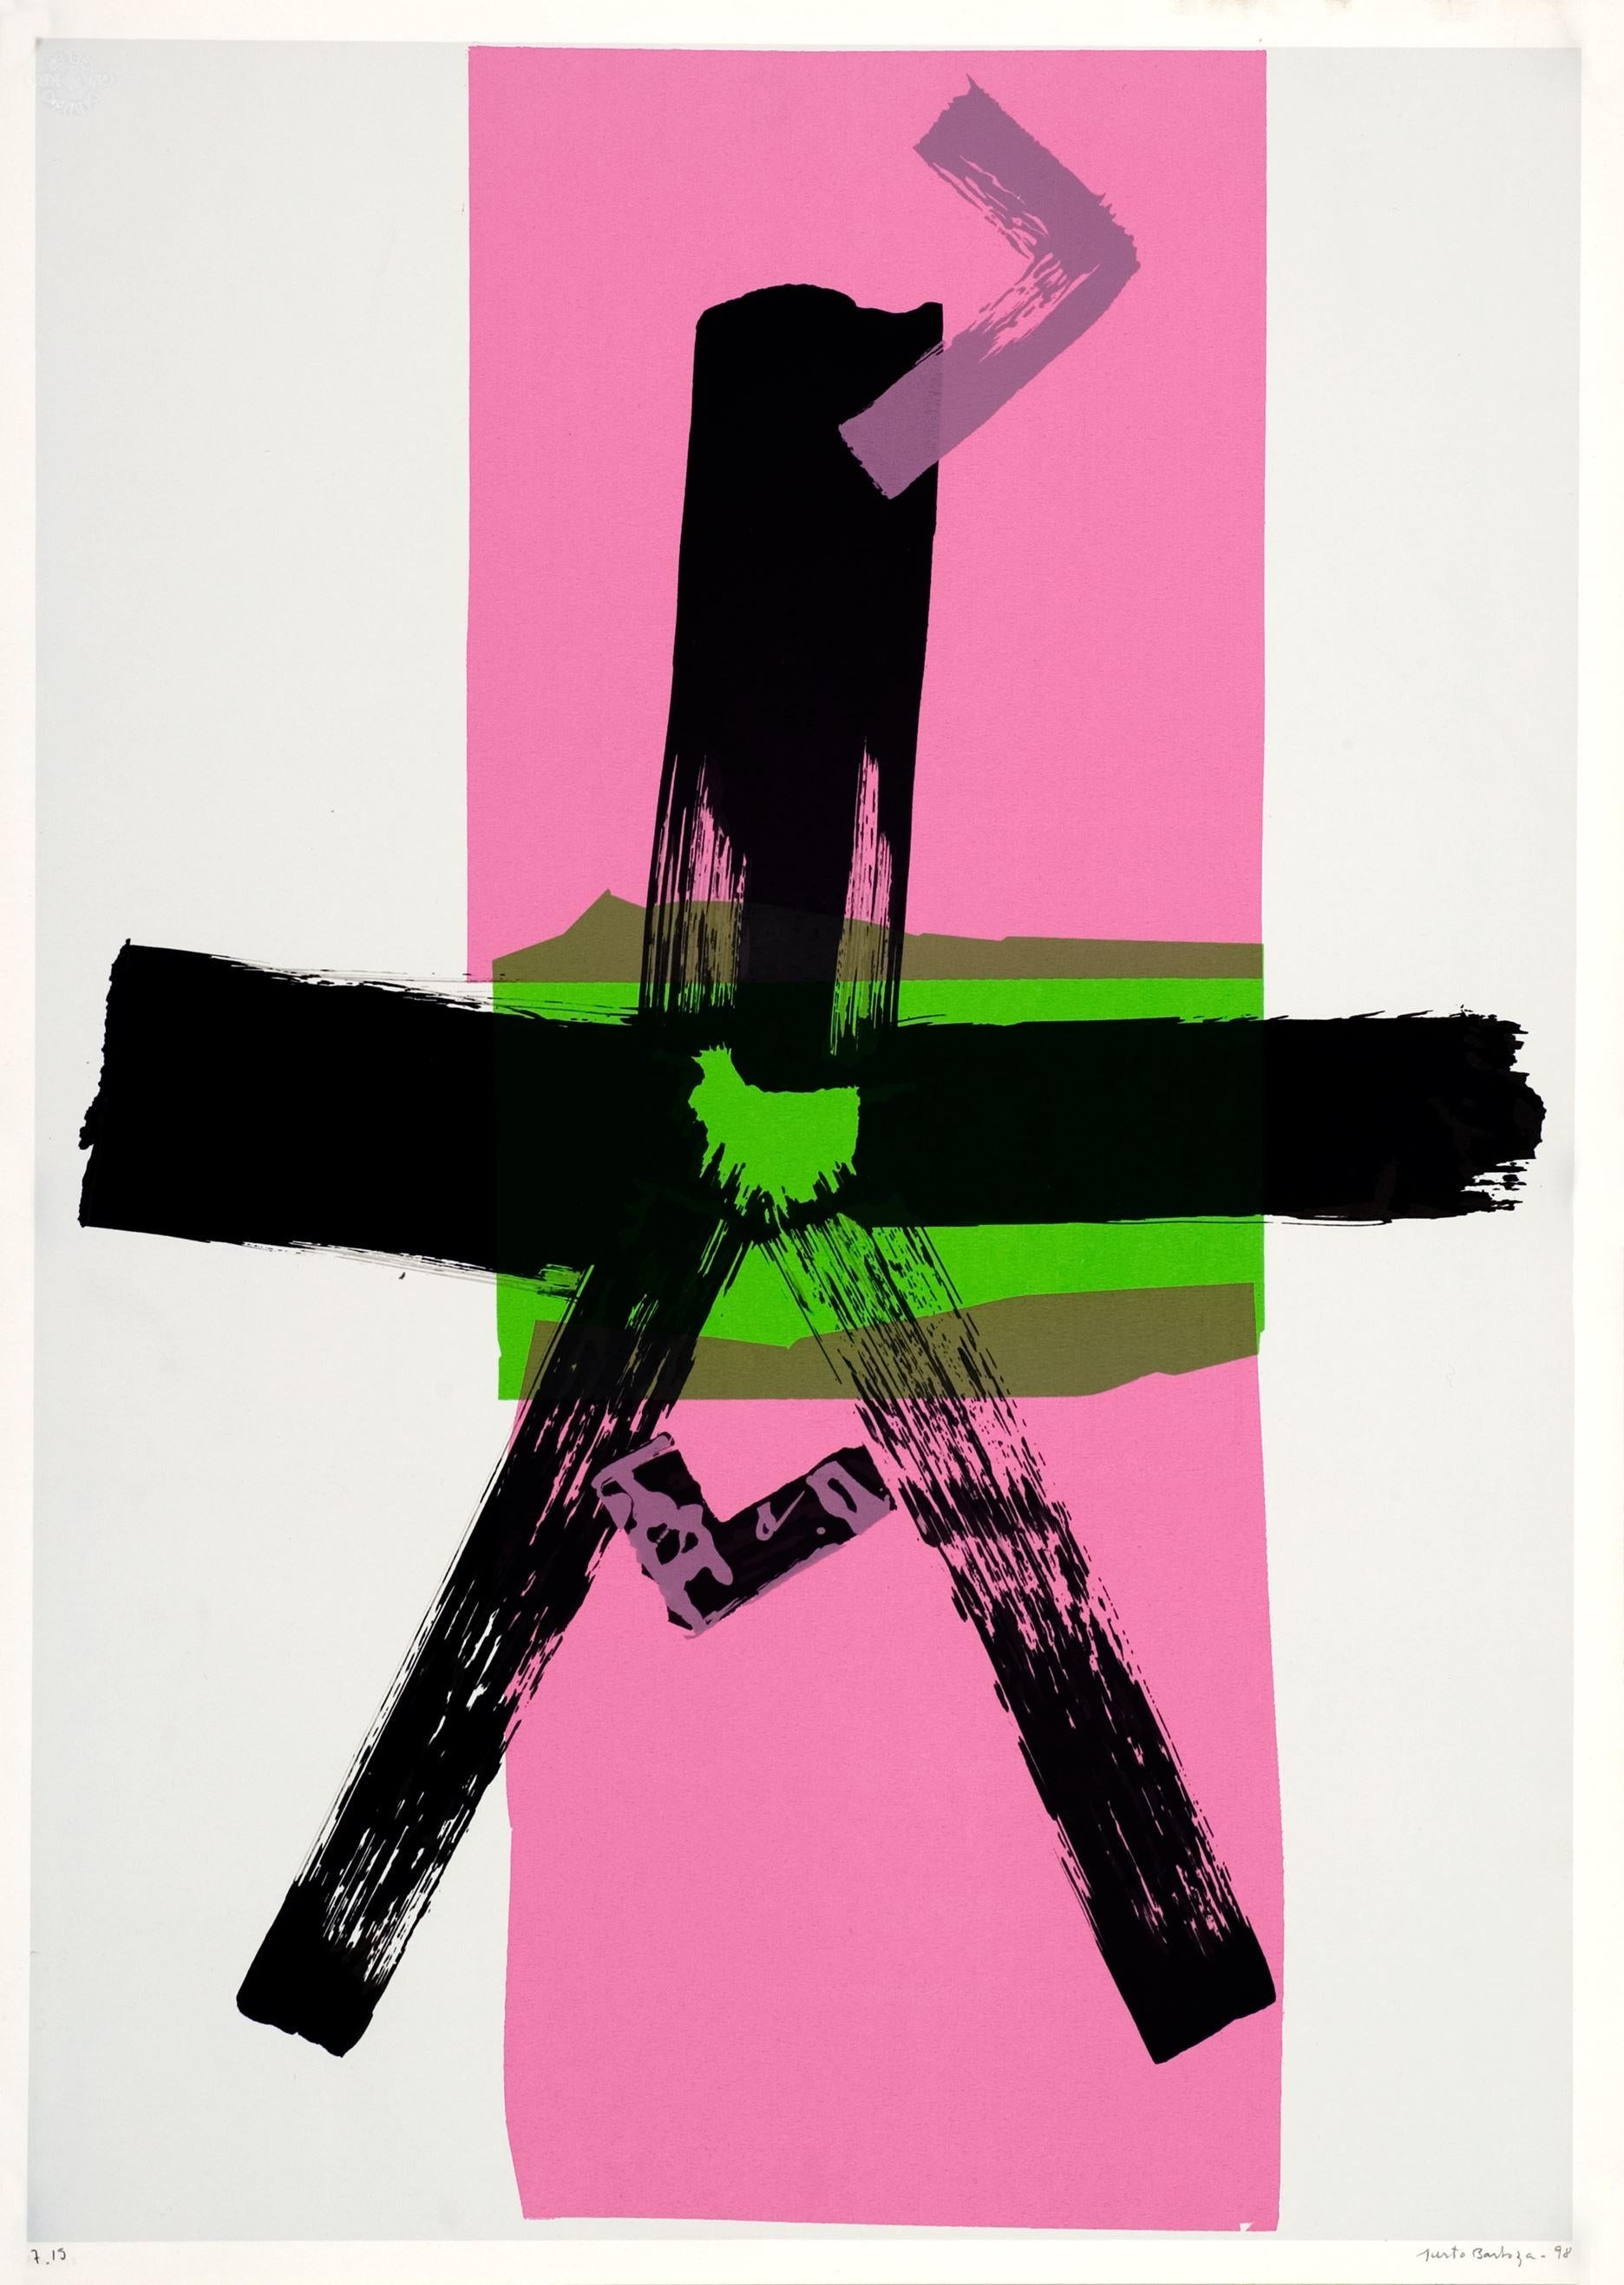 Justo Barboza (Argentine, 1938)
Sinned (verde rosa)", 1998
sérigraphie sur papier Guarro Geler
27.6 x 19.7 in. (70 x 50 cm.)
Edition de 15
Non encadré
ID : BAR1437-020-015
Signé par l'auteur